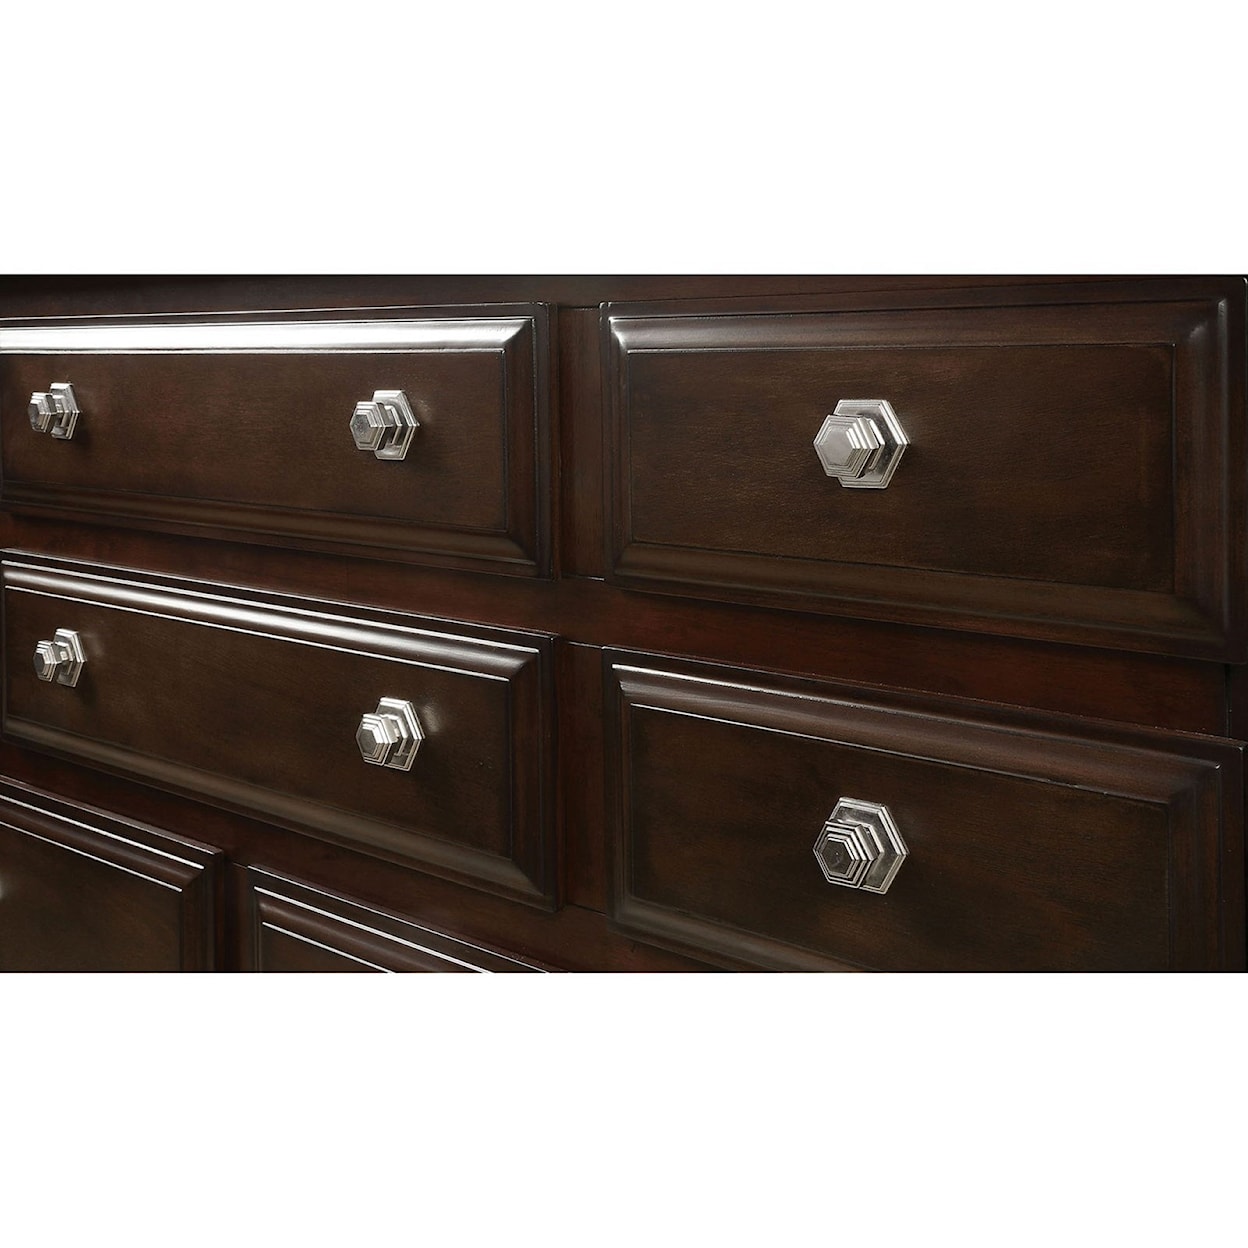 Furniture of America - FOA Litchville Dresser